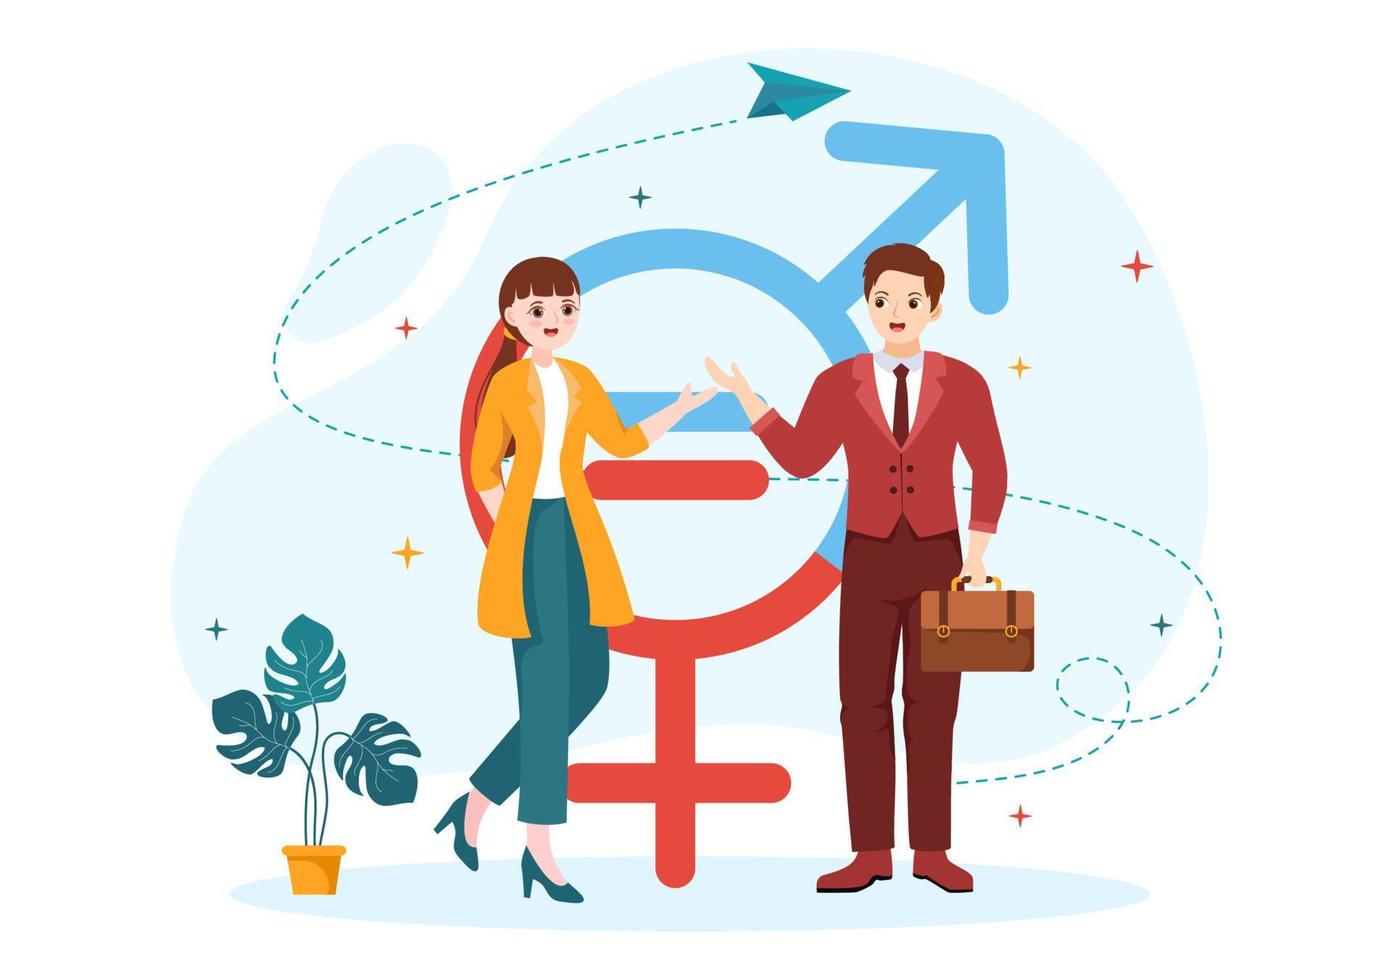 sexism illustration med kön olikhet mellan män och kvinnor i arbetsplats eller social i sluta diskriminering tecknad serie hand dragen mallar vektor